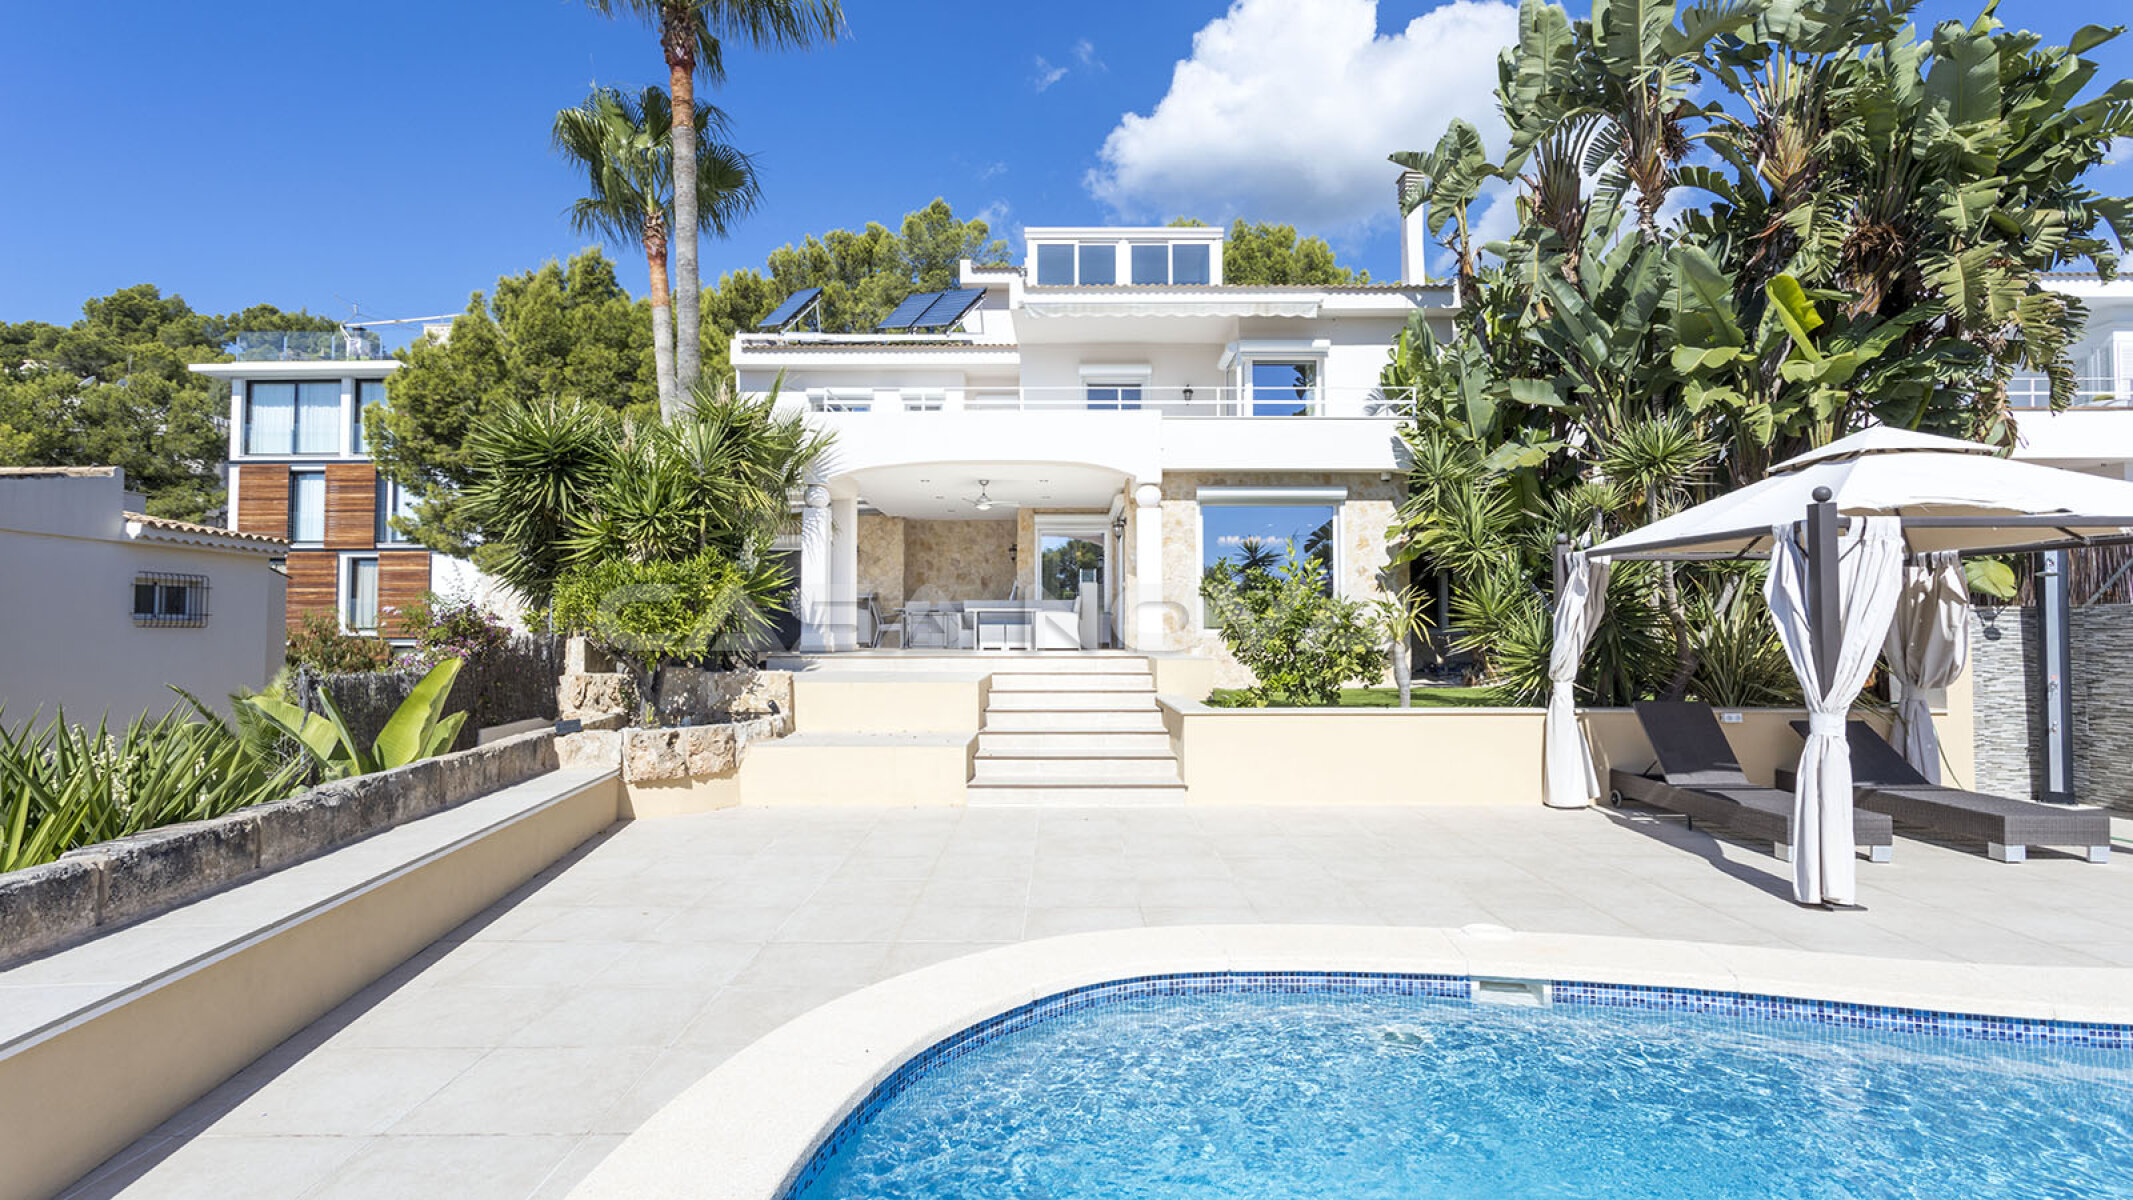 Sch�ne Mallorca Villa mit Pool und Chilloutbereich